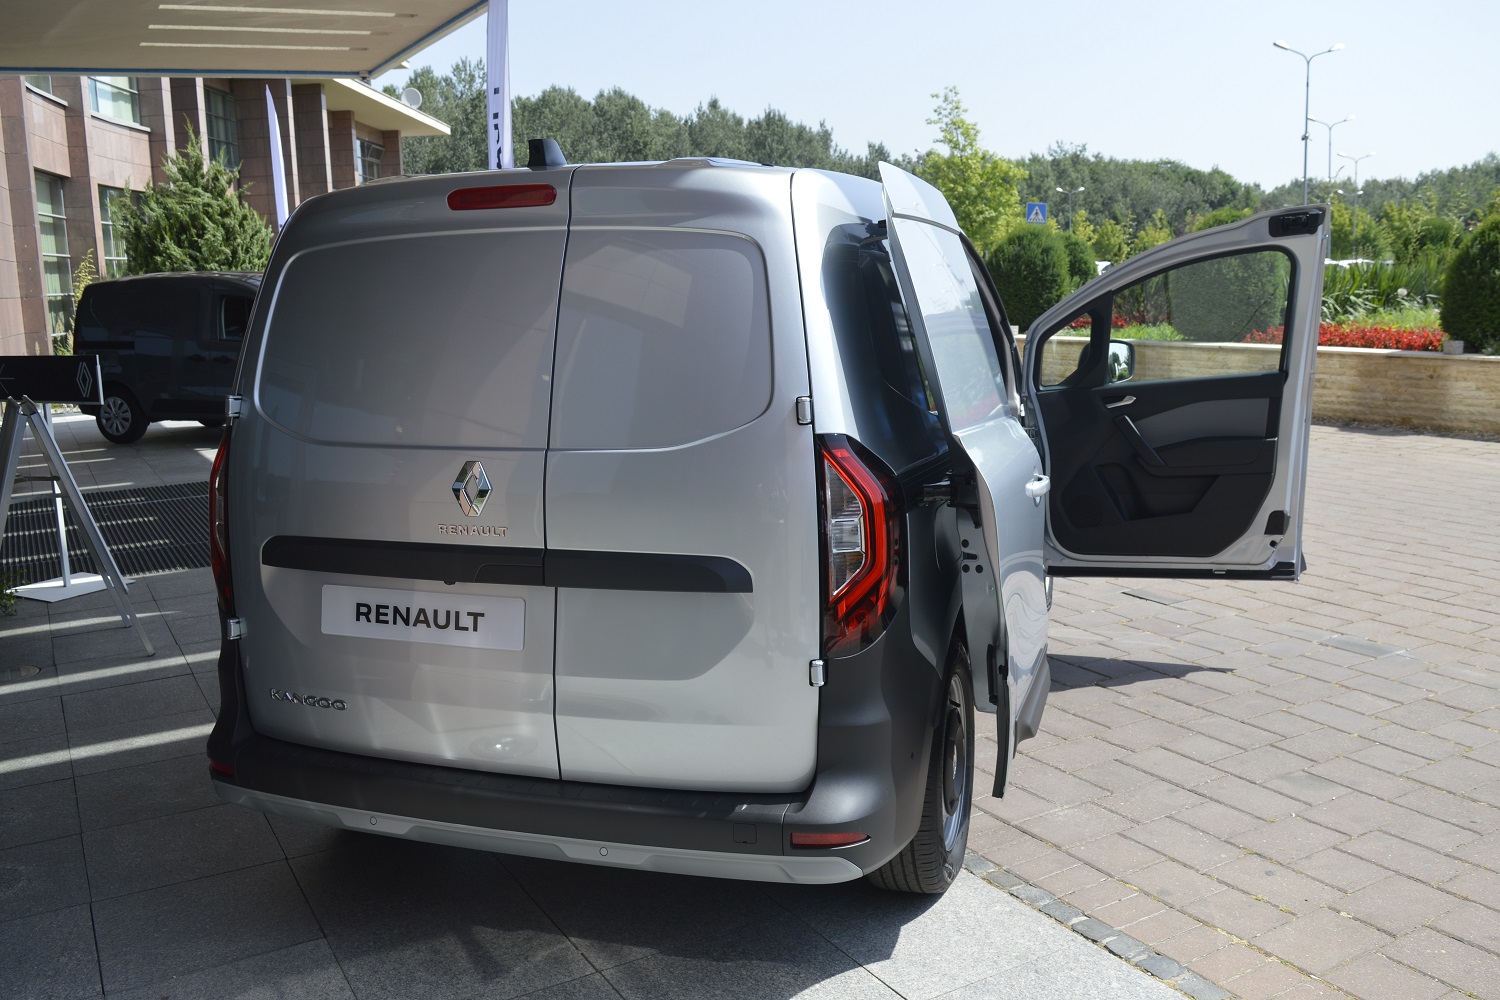 Áru kerül az ülés helyére az új Renault furgonban 3